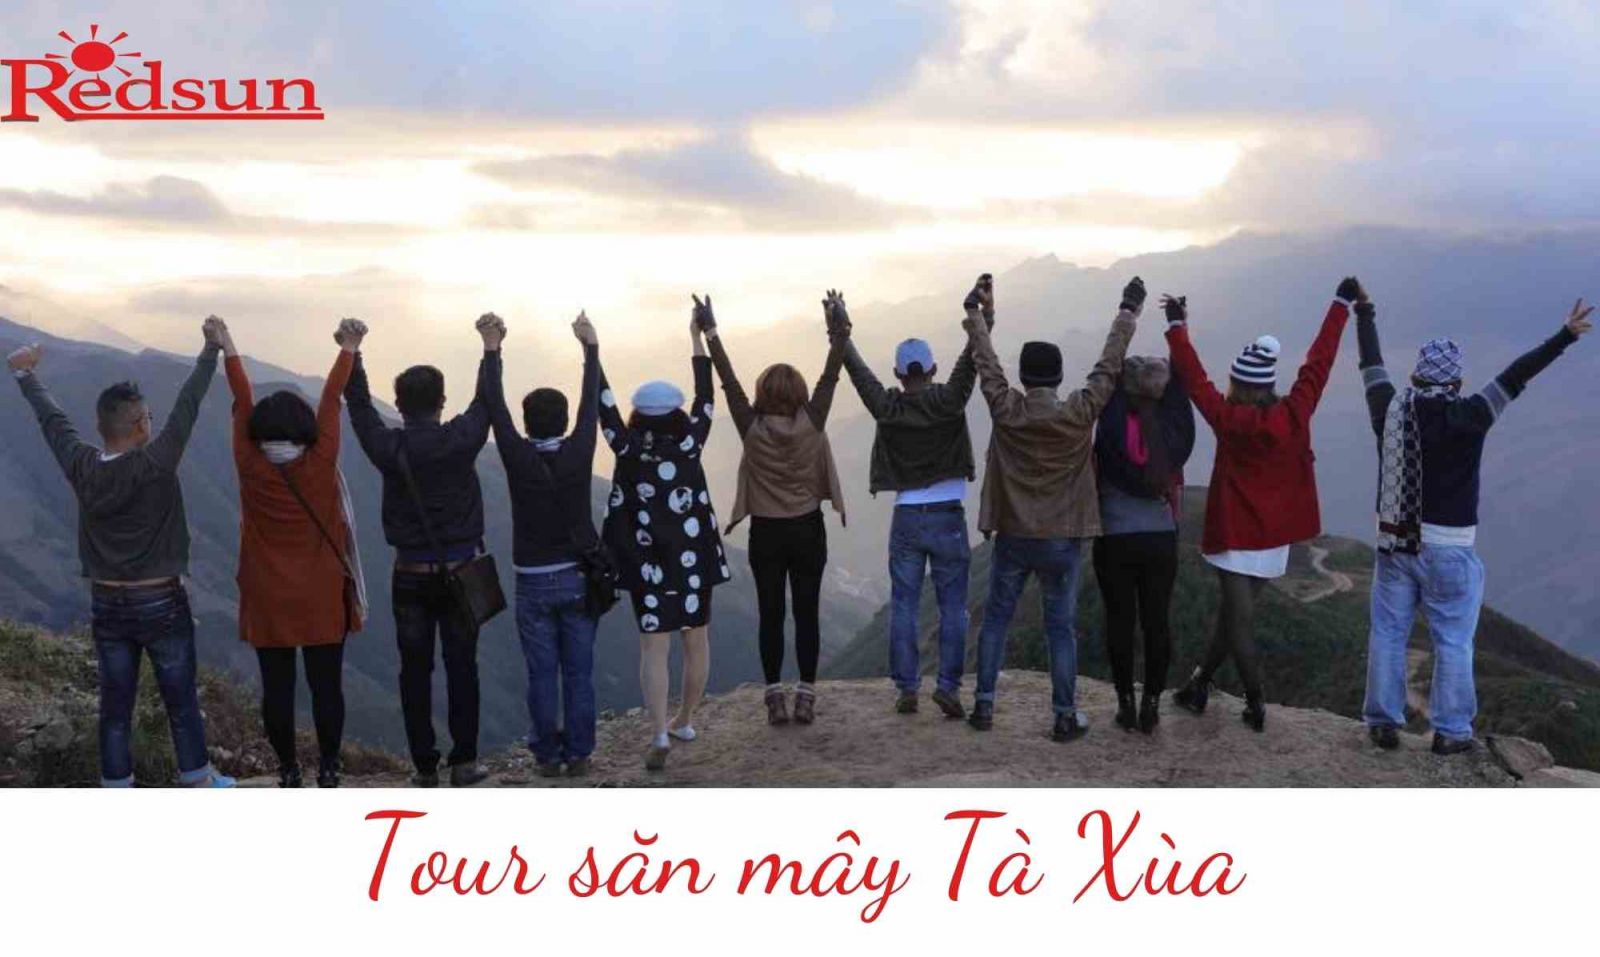 Red Sun tổ chức tour trải nghiệm săn mây tại Tà Xùa 02 ngày 01 đêm 